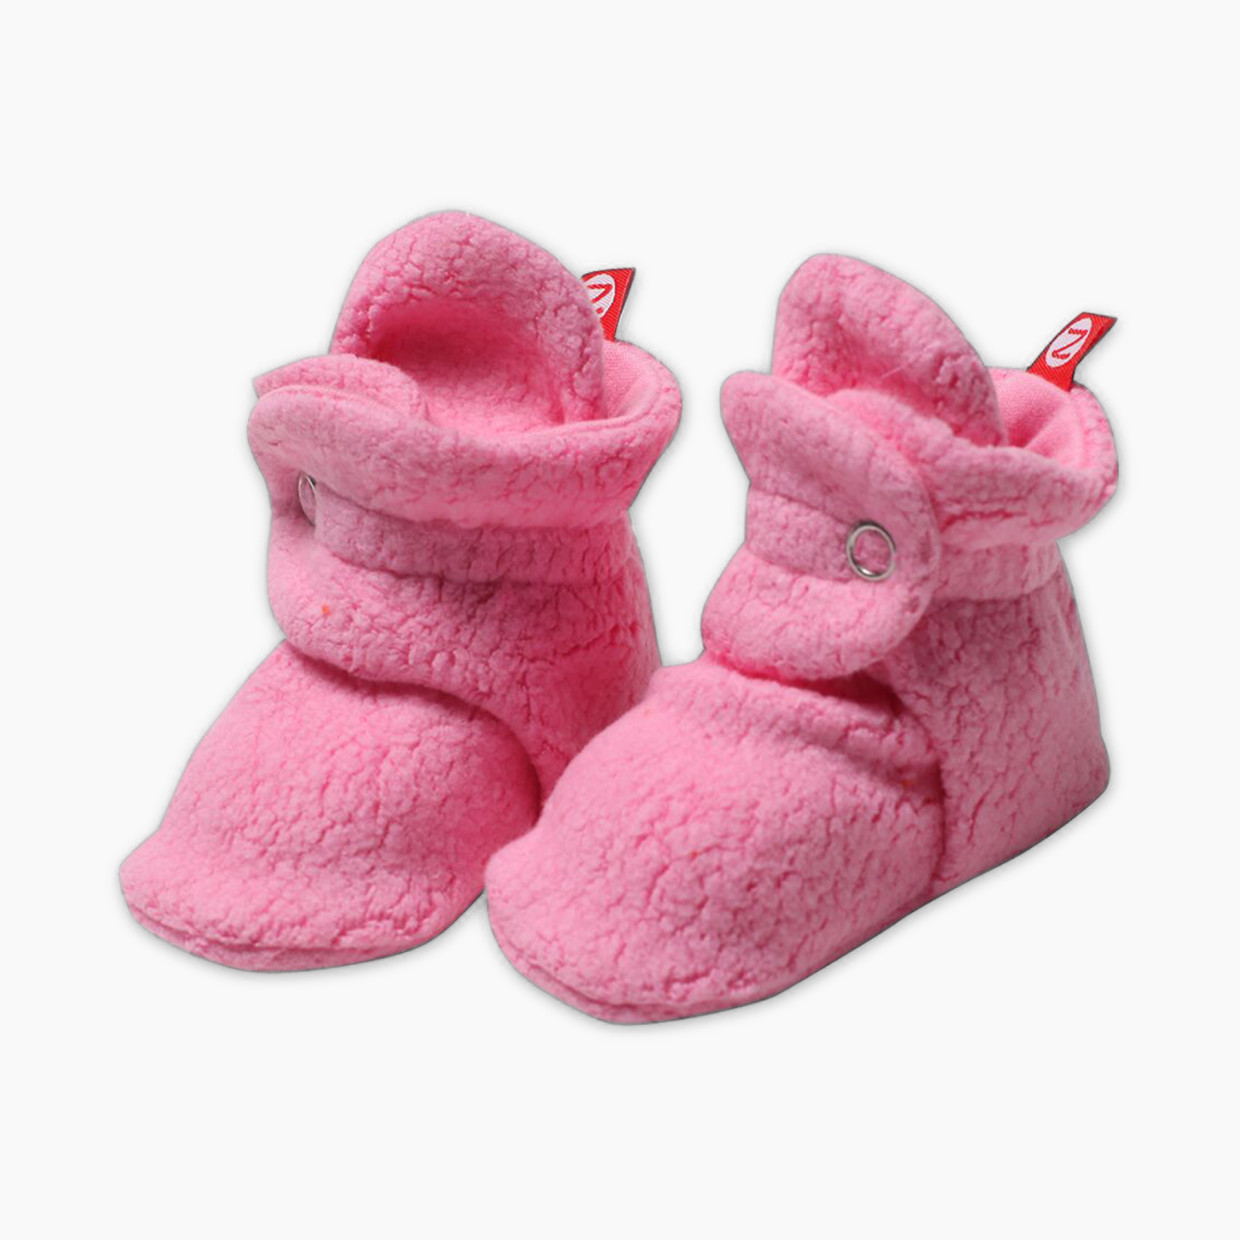 Zutano Cozie Fleece Bootie - Hot Pink, 6 M.